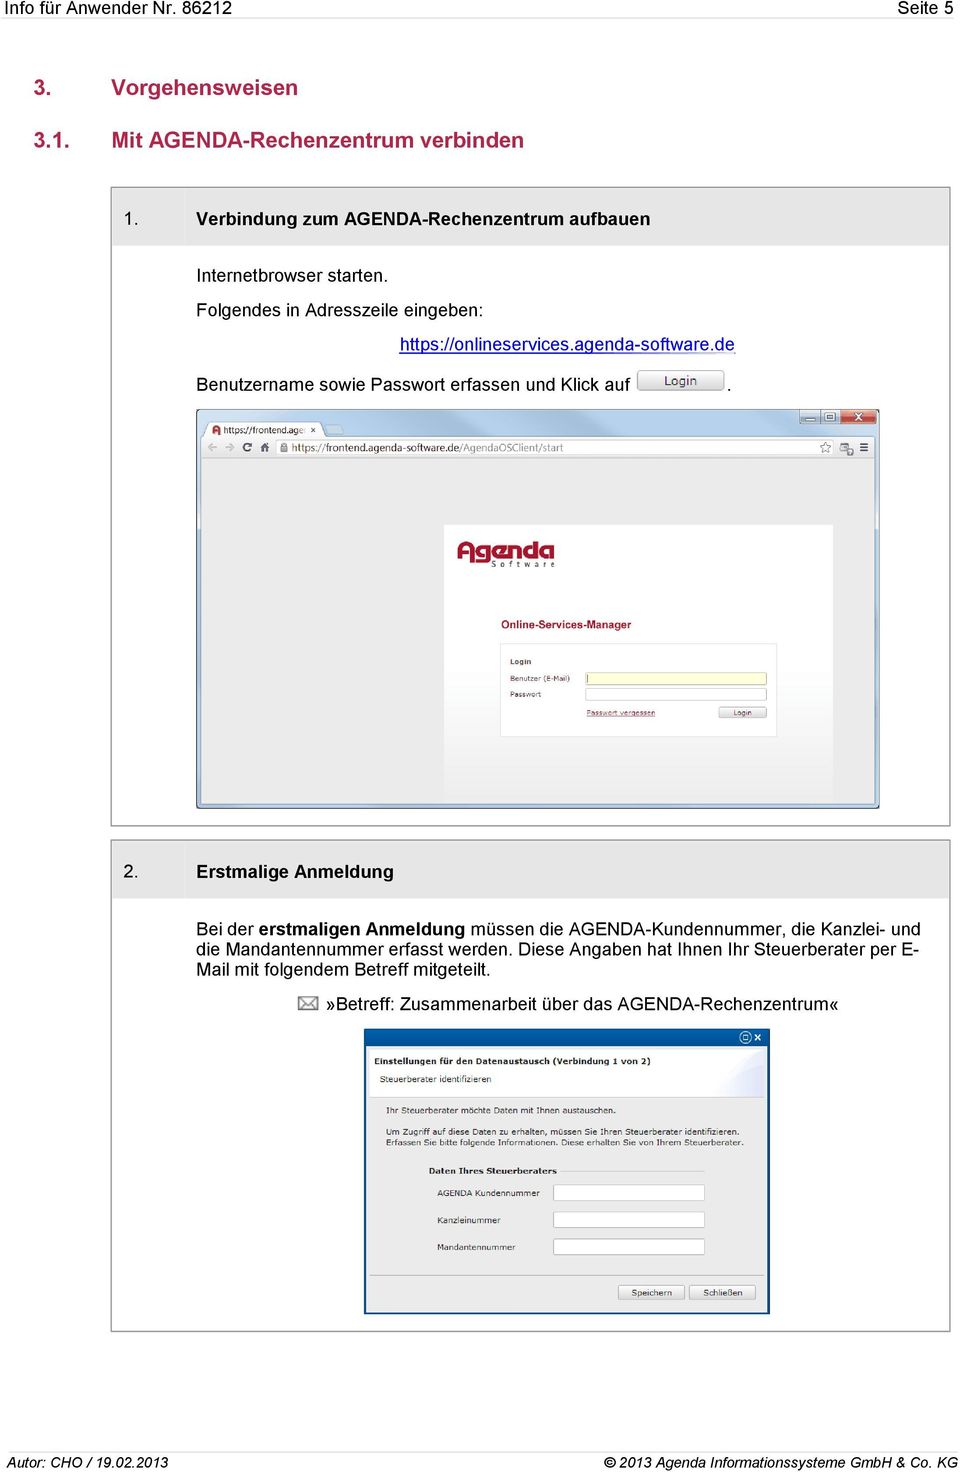 agenda-software.de Benutzername sowie Passwort erfassen und Klick auf. 2.